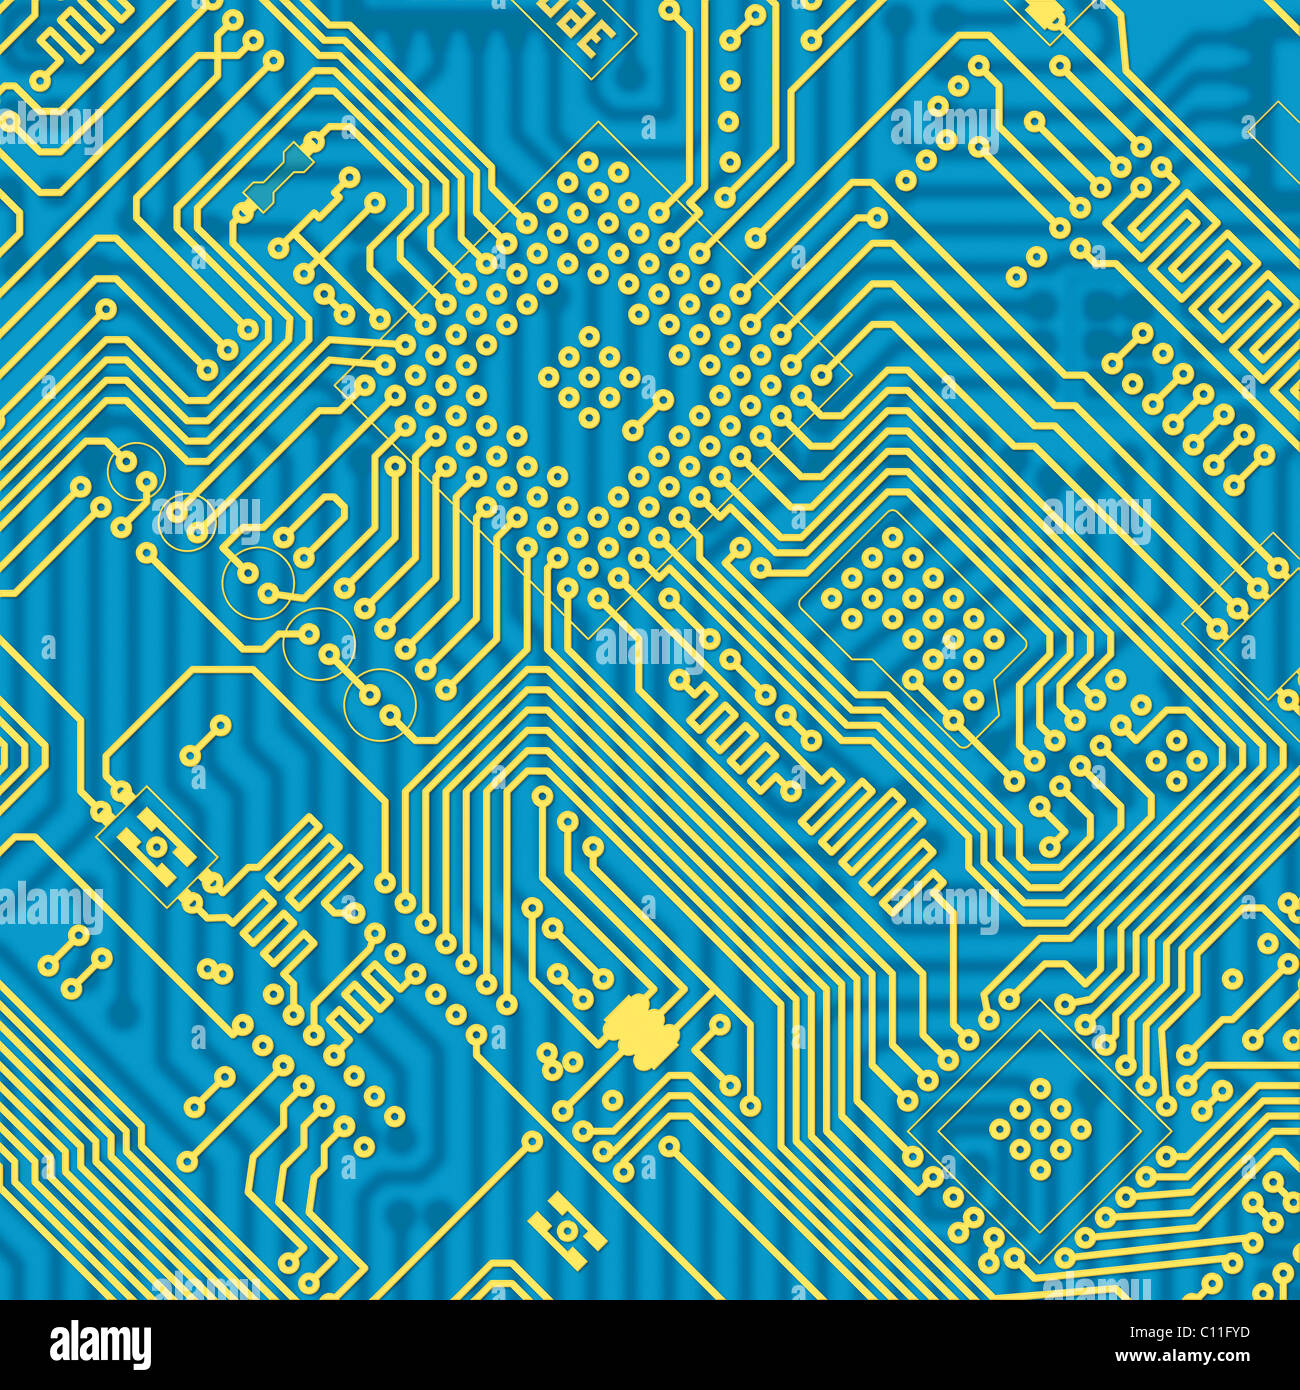 Placa de circuito impreso de textura industrial azul Foto de stock